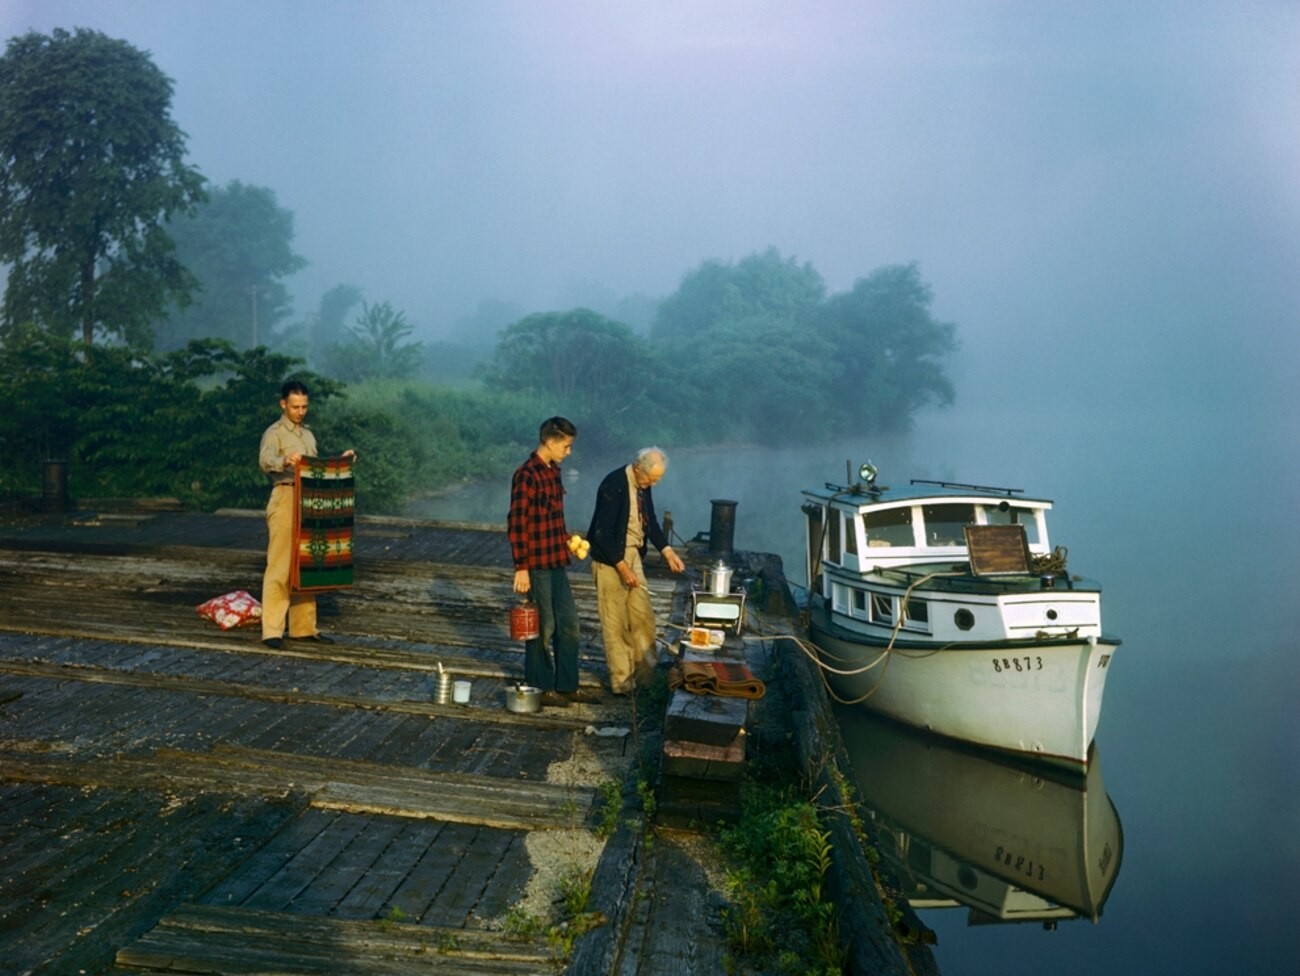 Экипаж лодки готовит завтрак на реке Мохок, штат Нью-Йорк. Фотограф Б. Энтони Стюарт